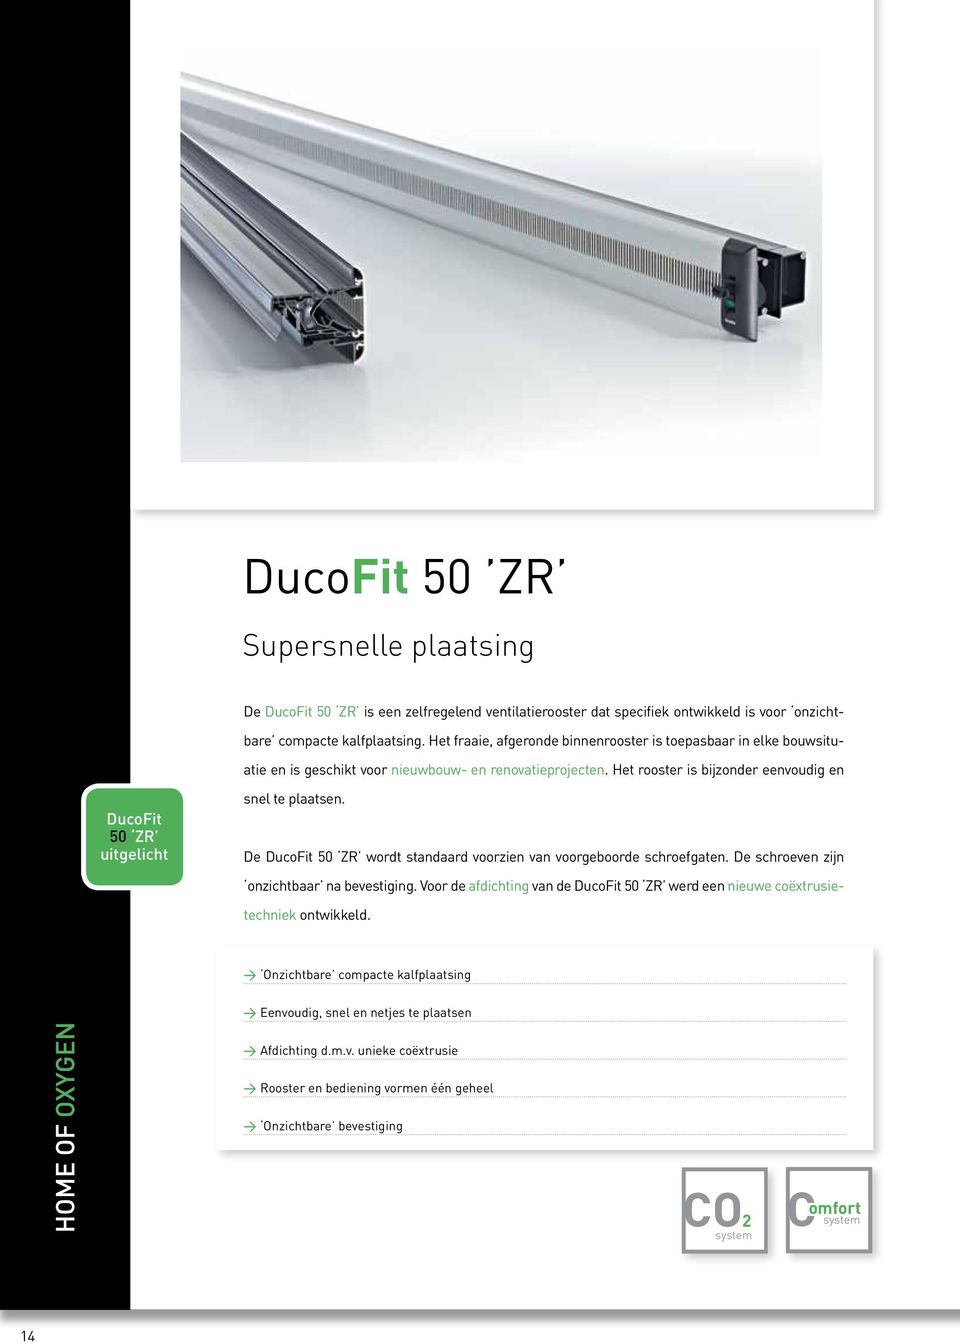 D DucoFit 50 ZR wordt standaard voorzin van voorgboord schrofgatn. D schrovn zijn onzichtbaar na bvstiging. Voor d afdichting van d DucoFit 50 ZR wrd n niuw coëxtrusitchnik ontwikkld.